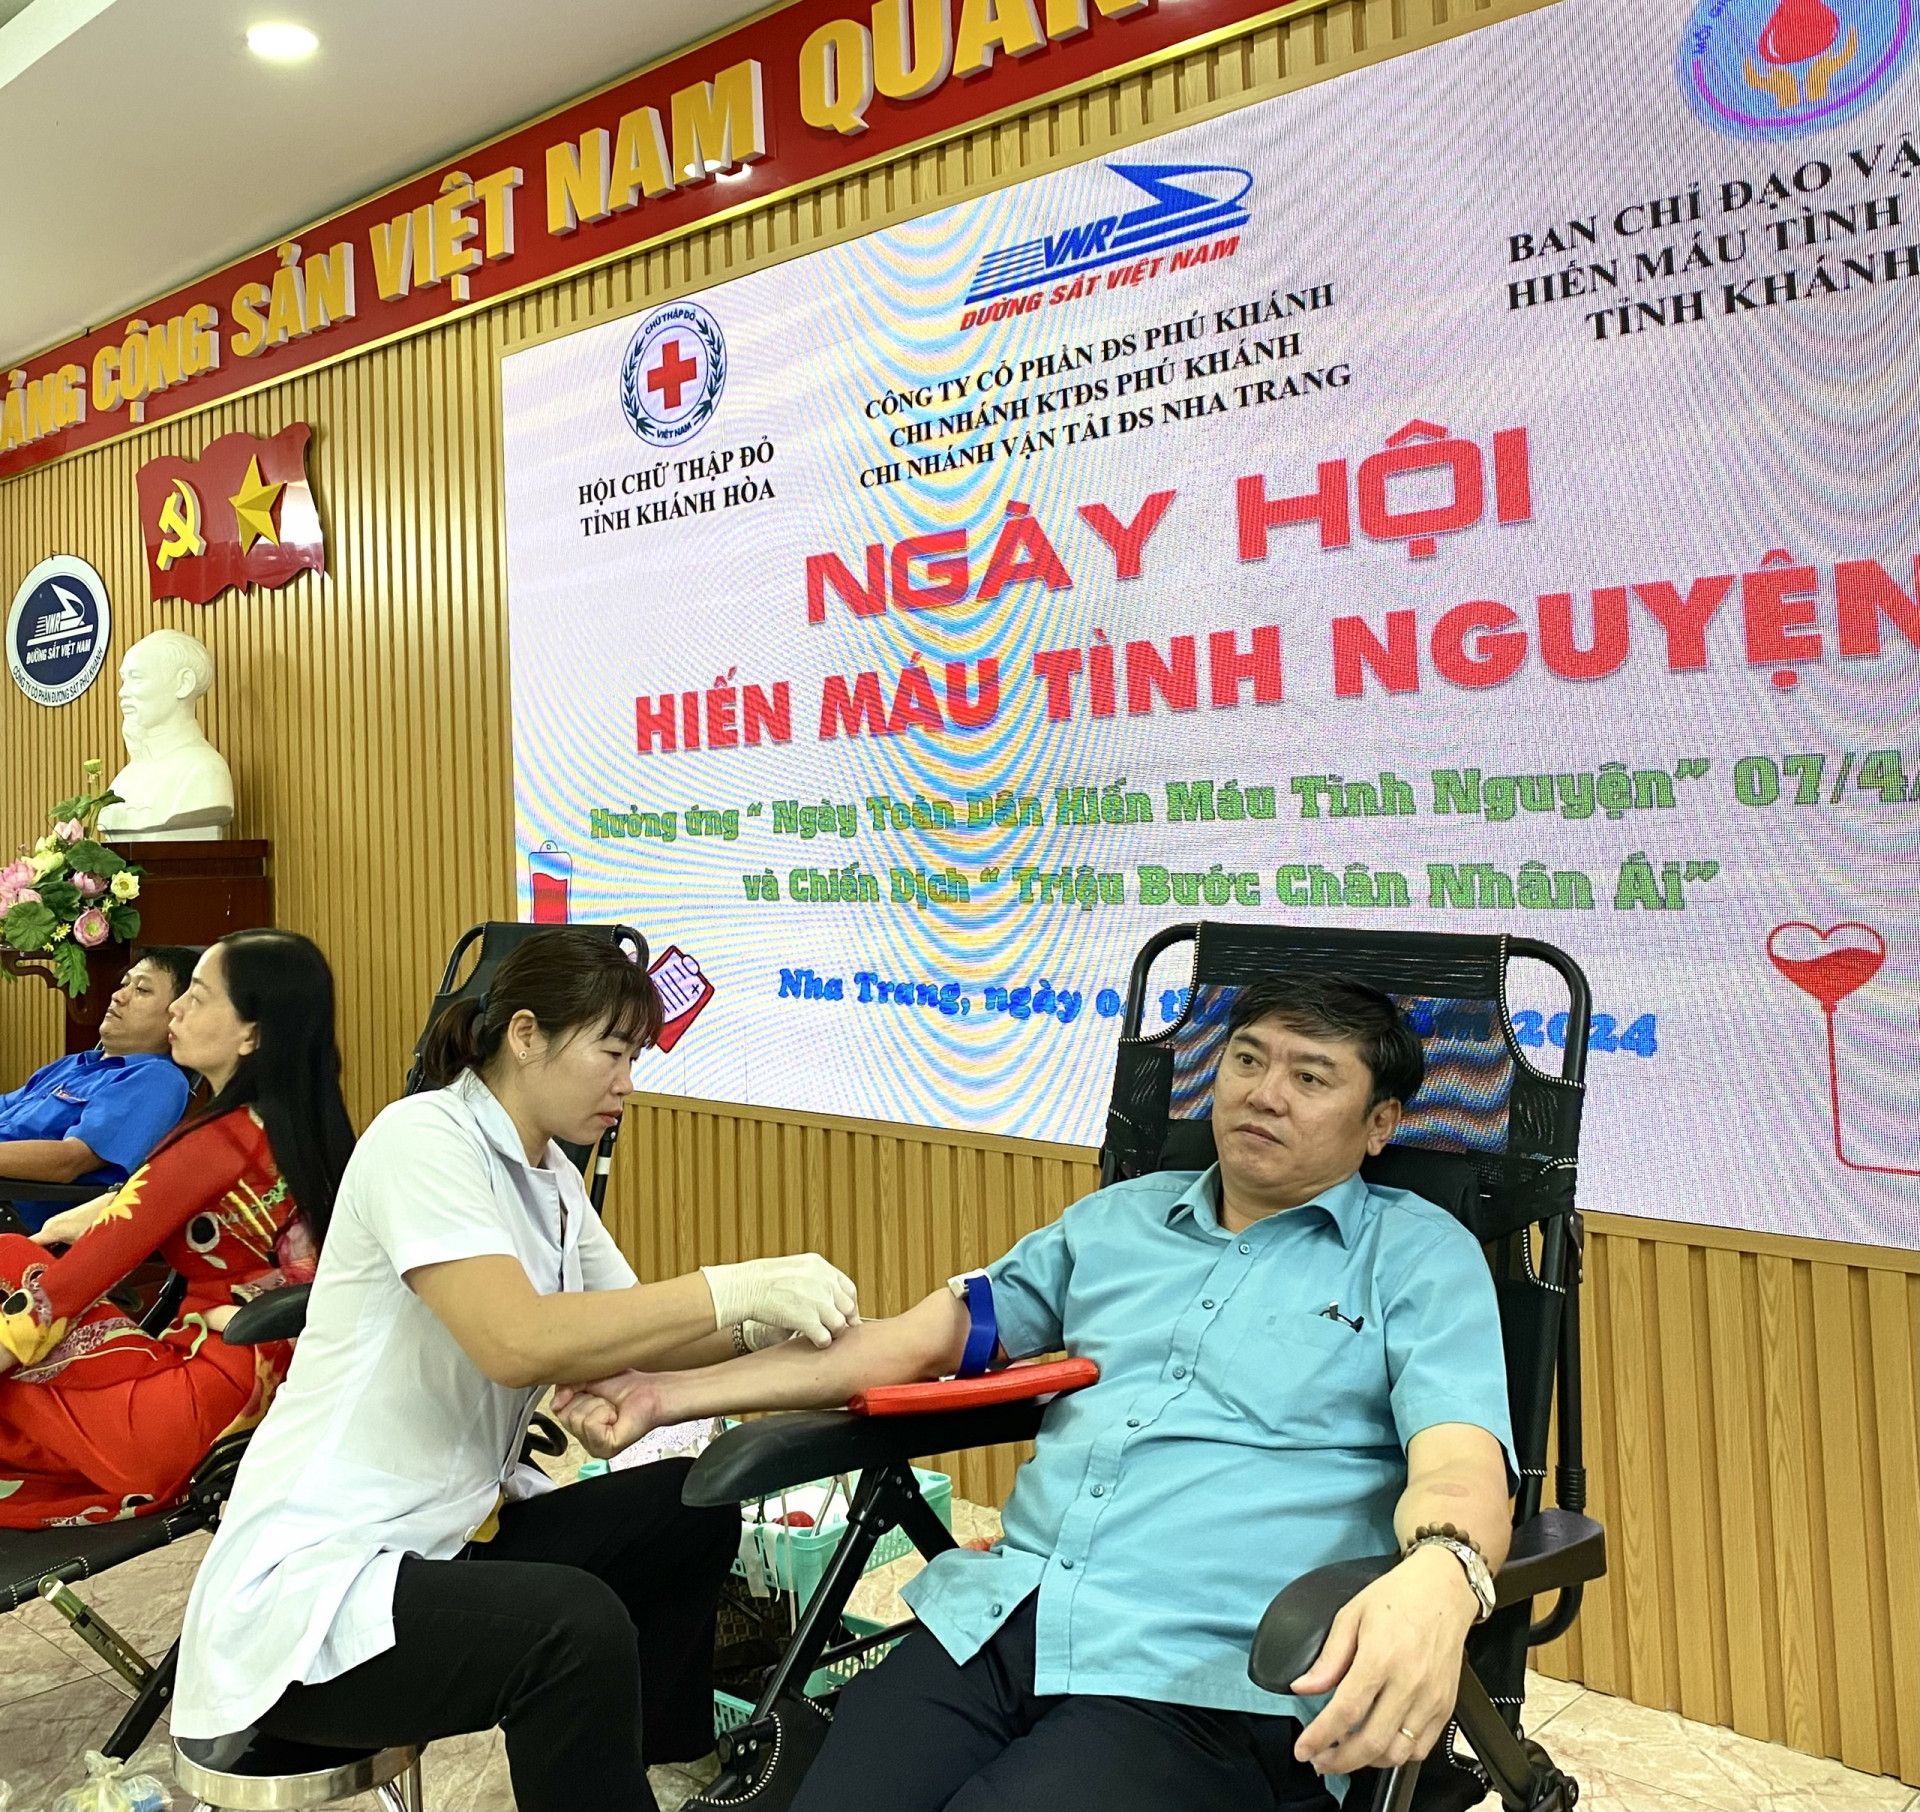 Lãnh đạo Công ty Cổ phần đường Sắt Phú Khánh tham gia hiến máu tình nguyện.